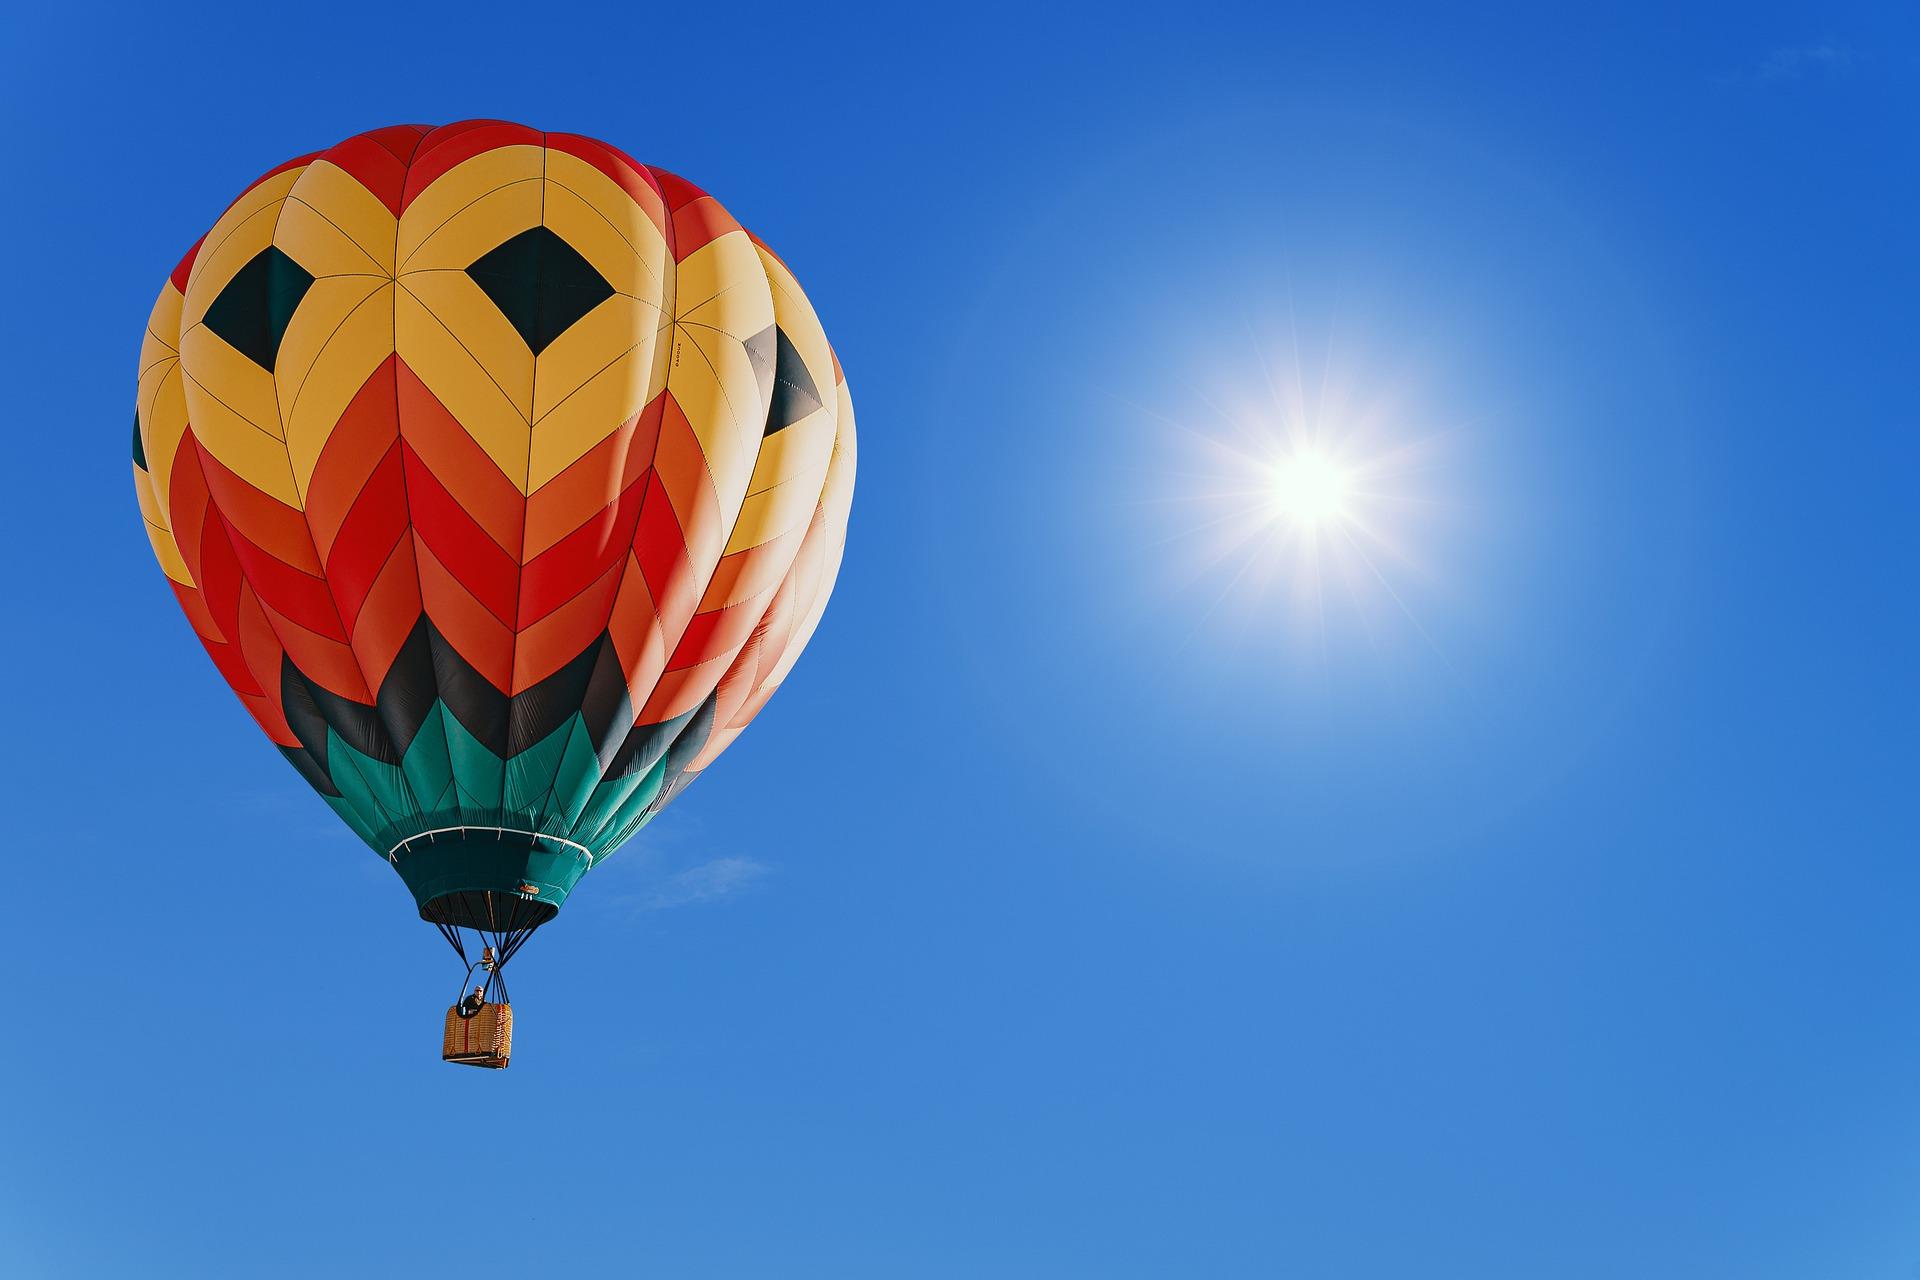 Stimmungsbild zum Beitrag: Es wird ein bunter Heißluftballon vor blauem Himmel abgebildet.